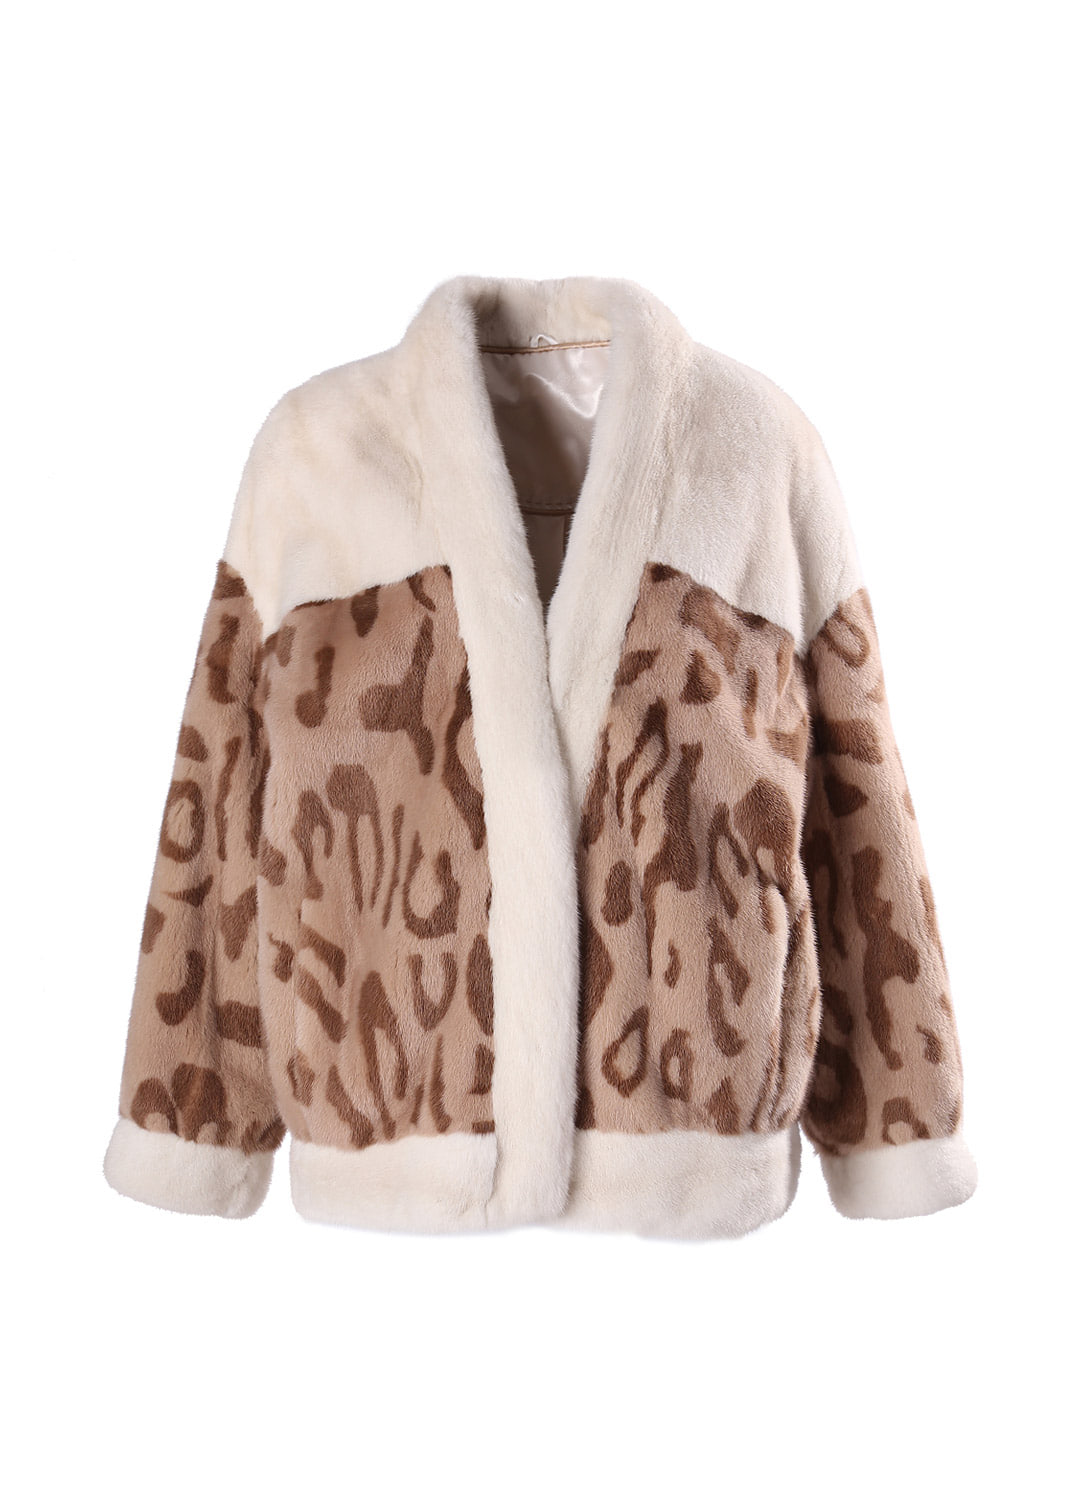 Leopard cardigan mink coat